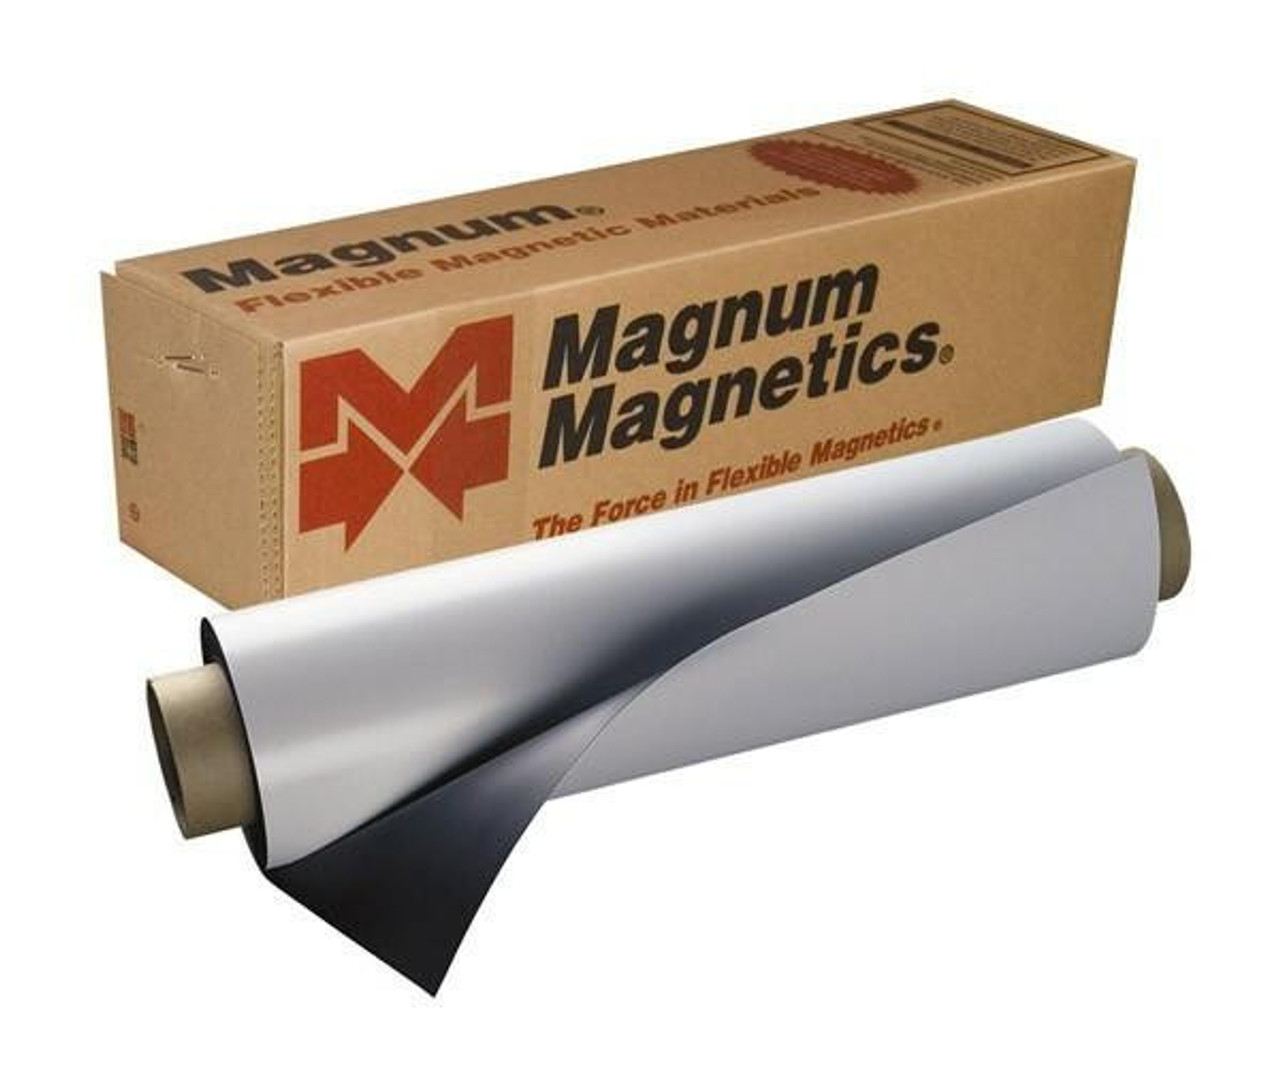 Inkjet Printable Magnetic Roll 24.375 x .016 x 25' MAGNET